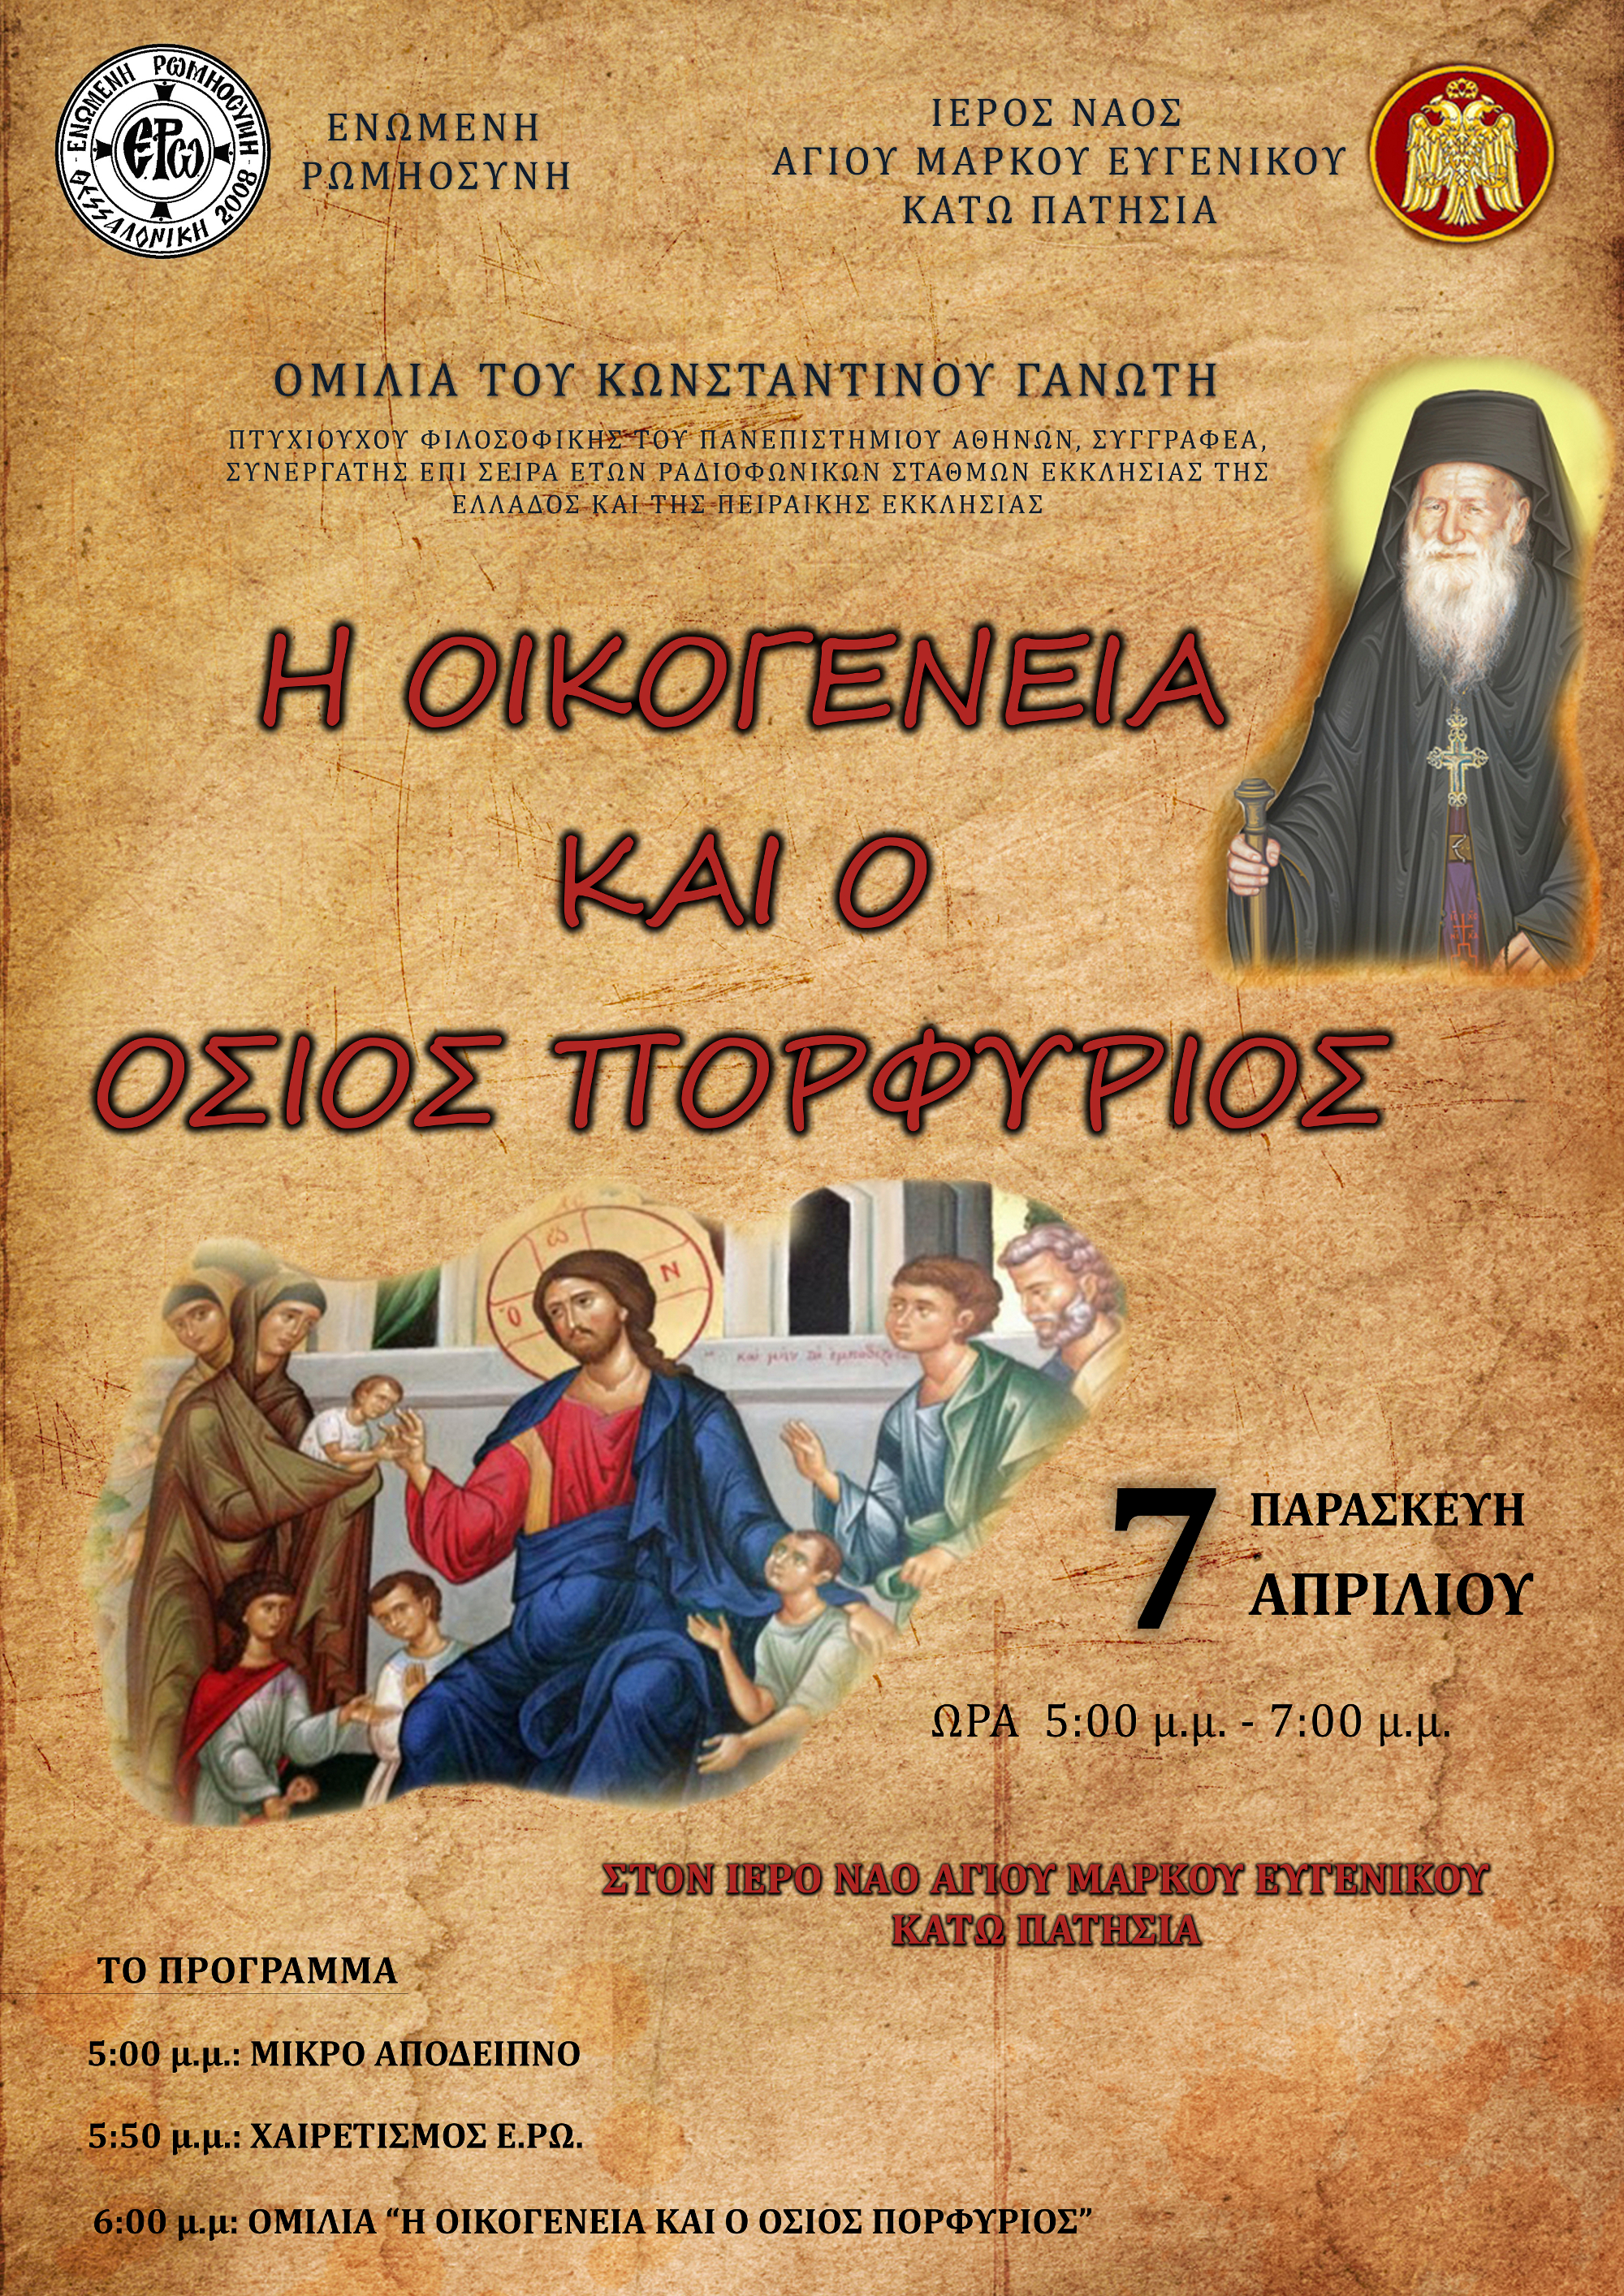 Εκδήλωση – ομιλία με θέμα «Η οικογένεια και ο Όσιος Πορφύριος» στην Αθήνα, 7-4-2017